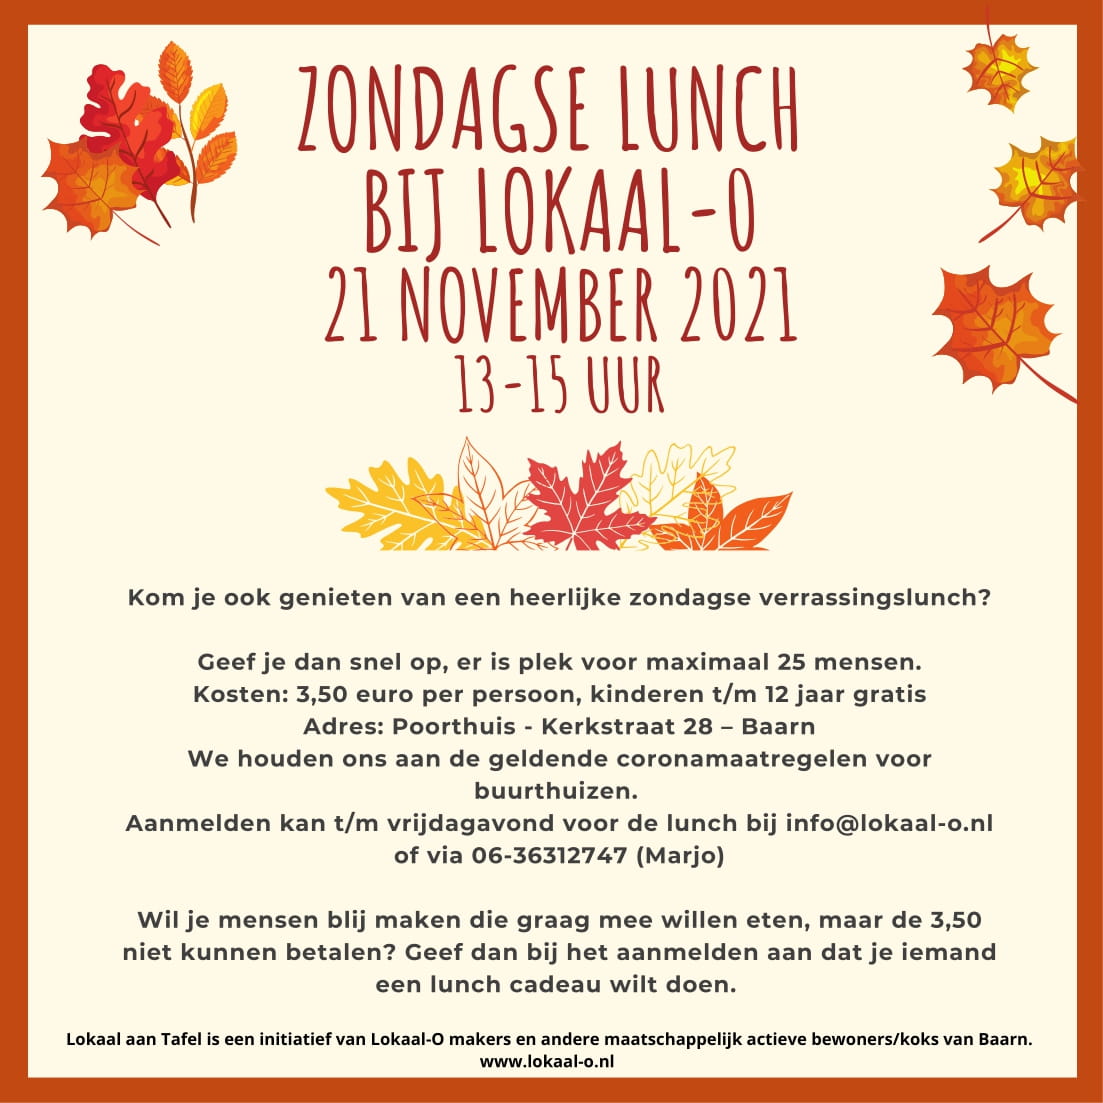 Je bekijkt nu Lokaal aan Tafel: zondagse lunch op 21 november